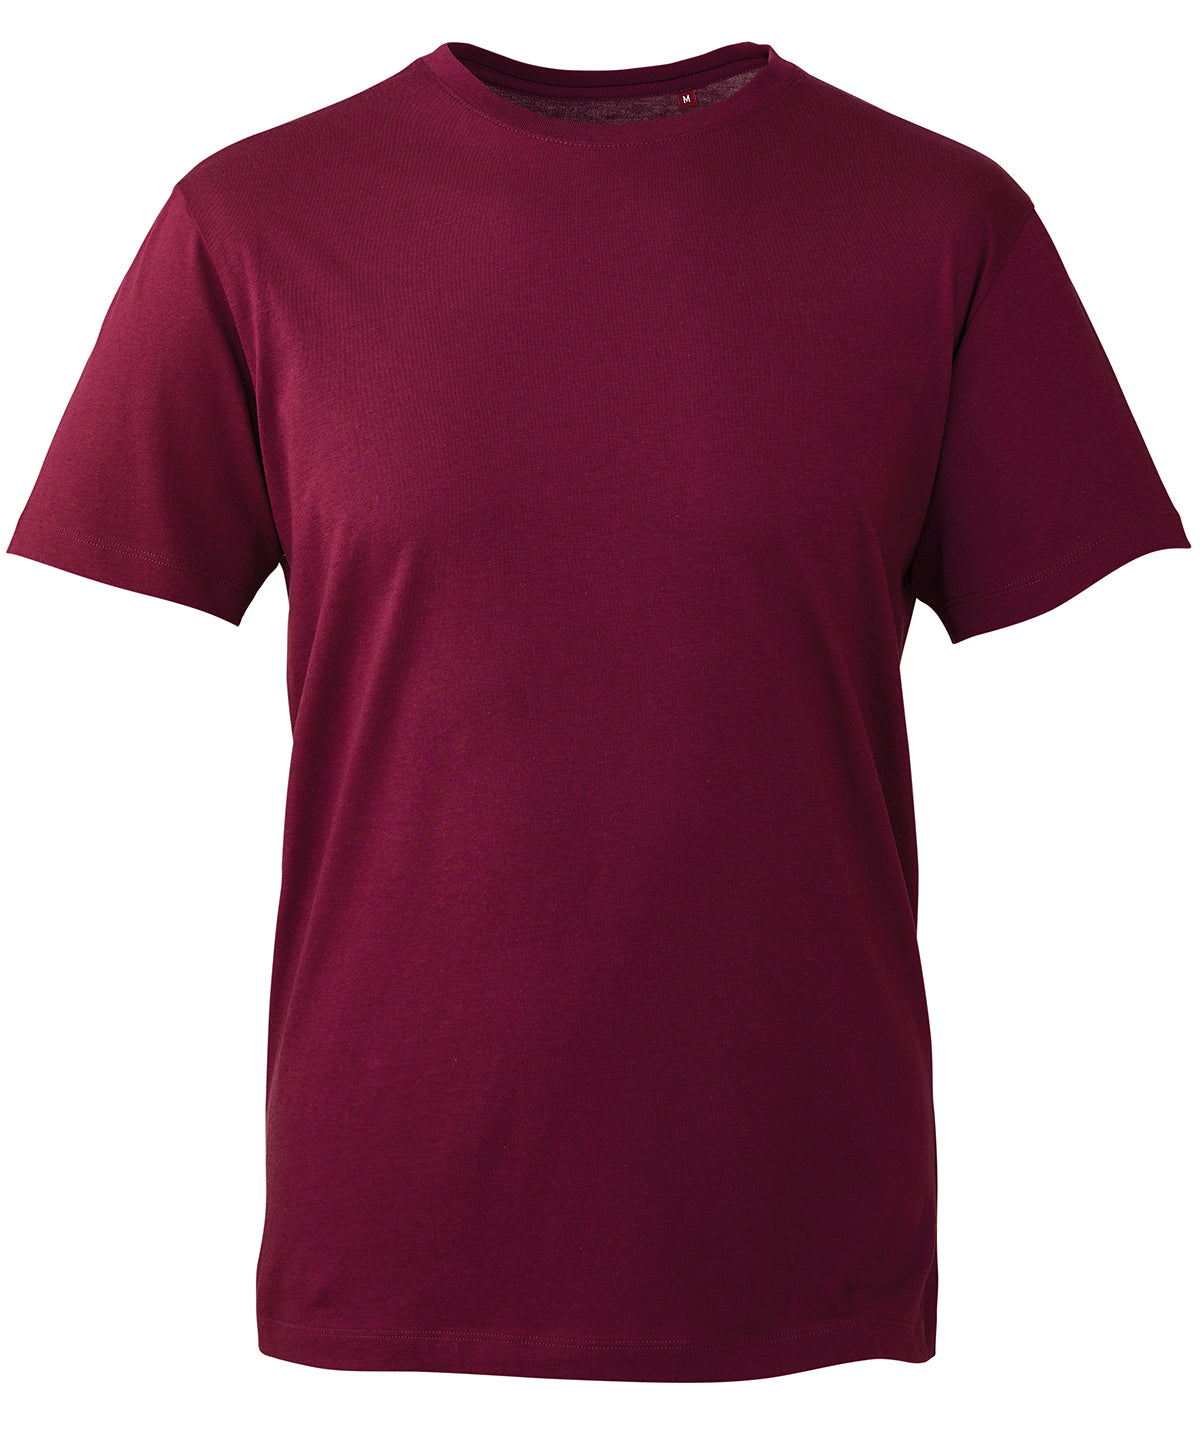 Personalised T-Shirts - Dark Pink Anthem Anthem t-shirt